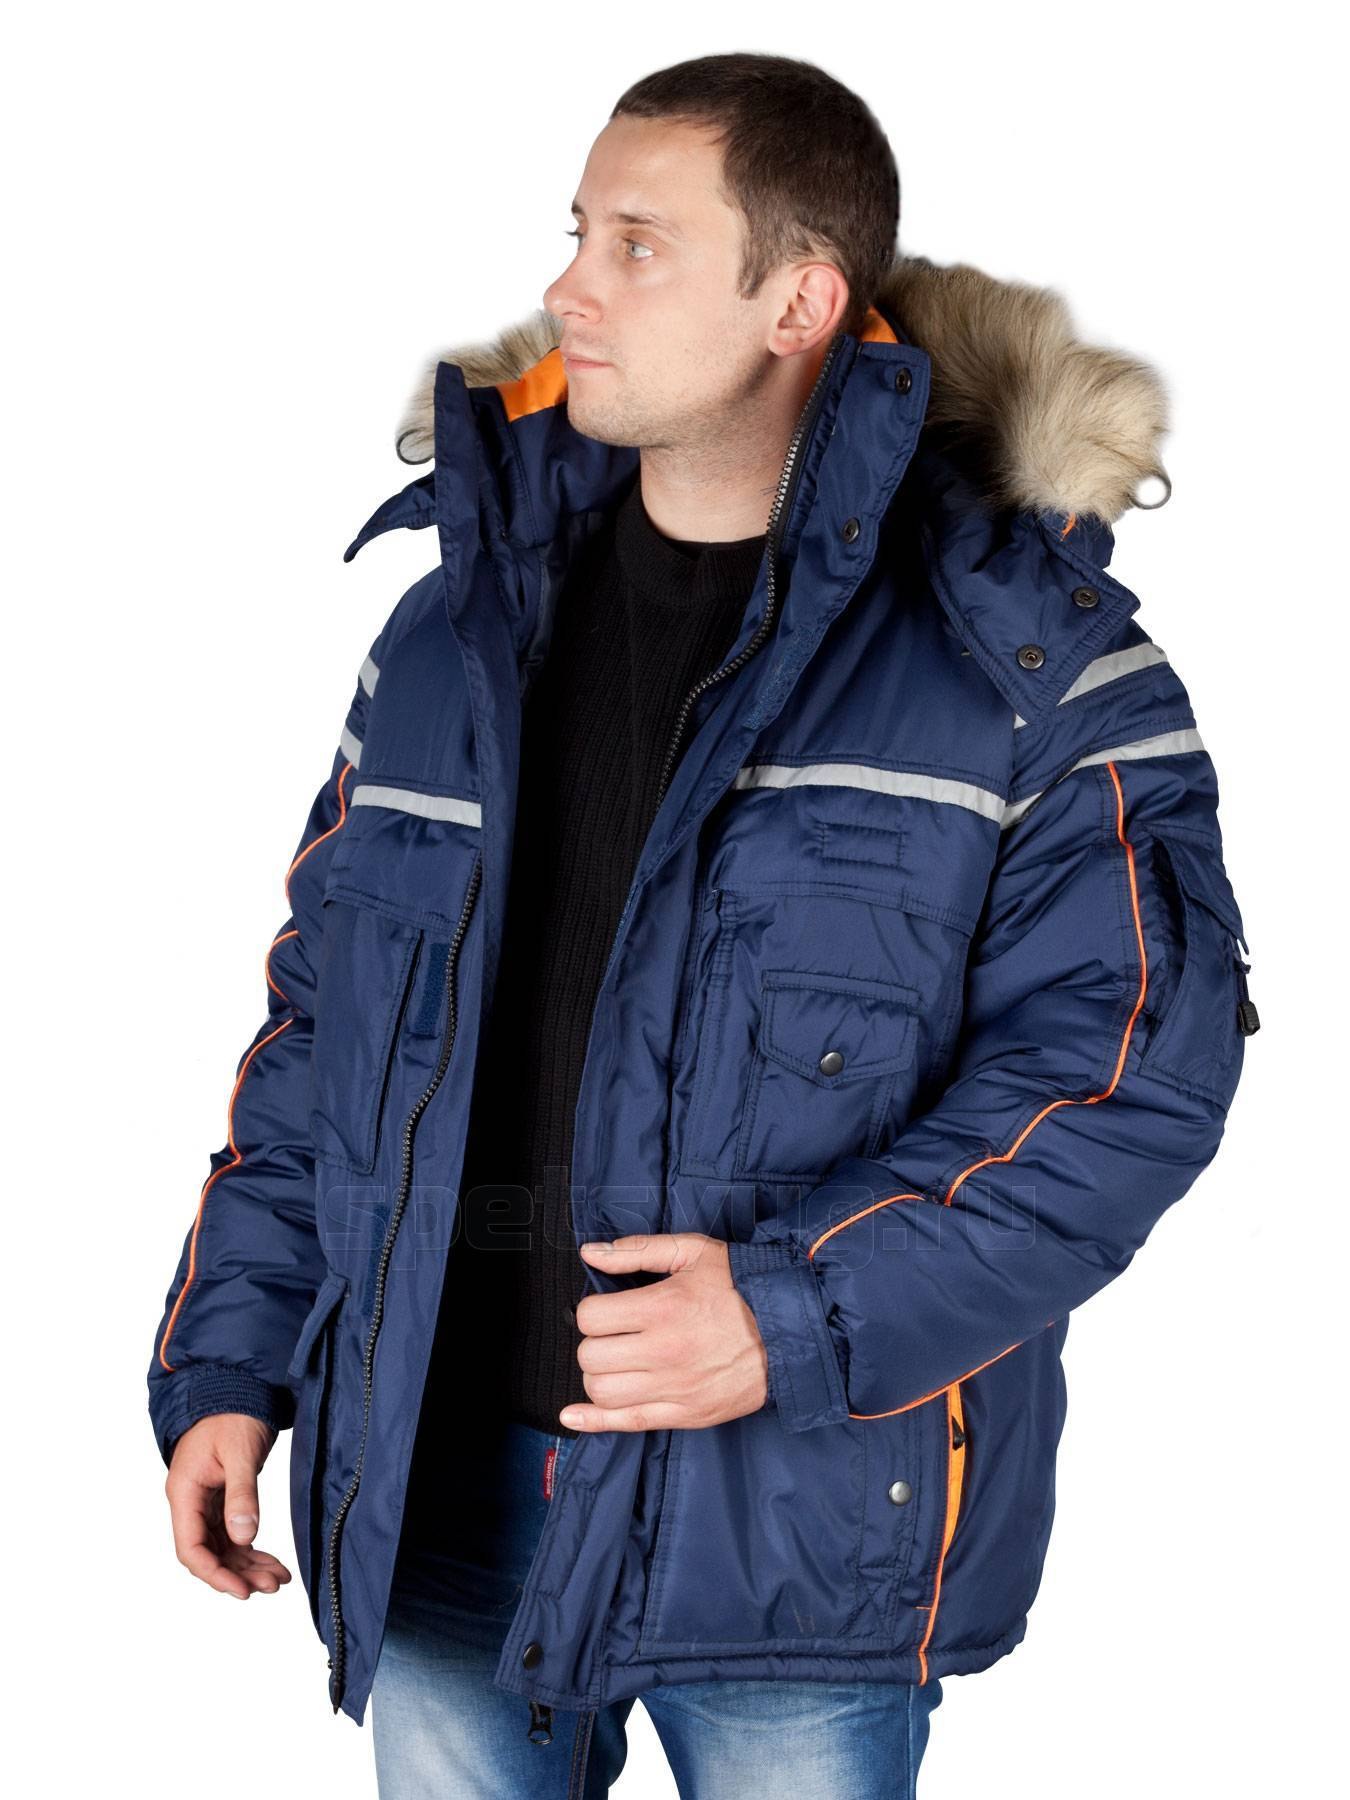 Куртки для мужчин в москве. Куртка мужская зимняя Аляска Техноавиа. Модель 2.183 куртка Аляска. Куртка Техноавиа Аляска Люкс. Куртка Аляска Люкс.